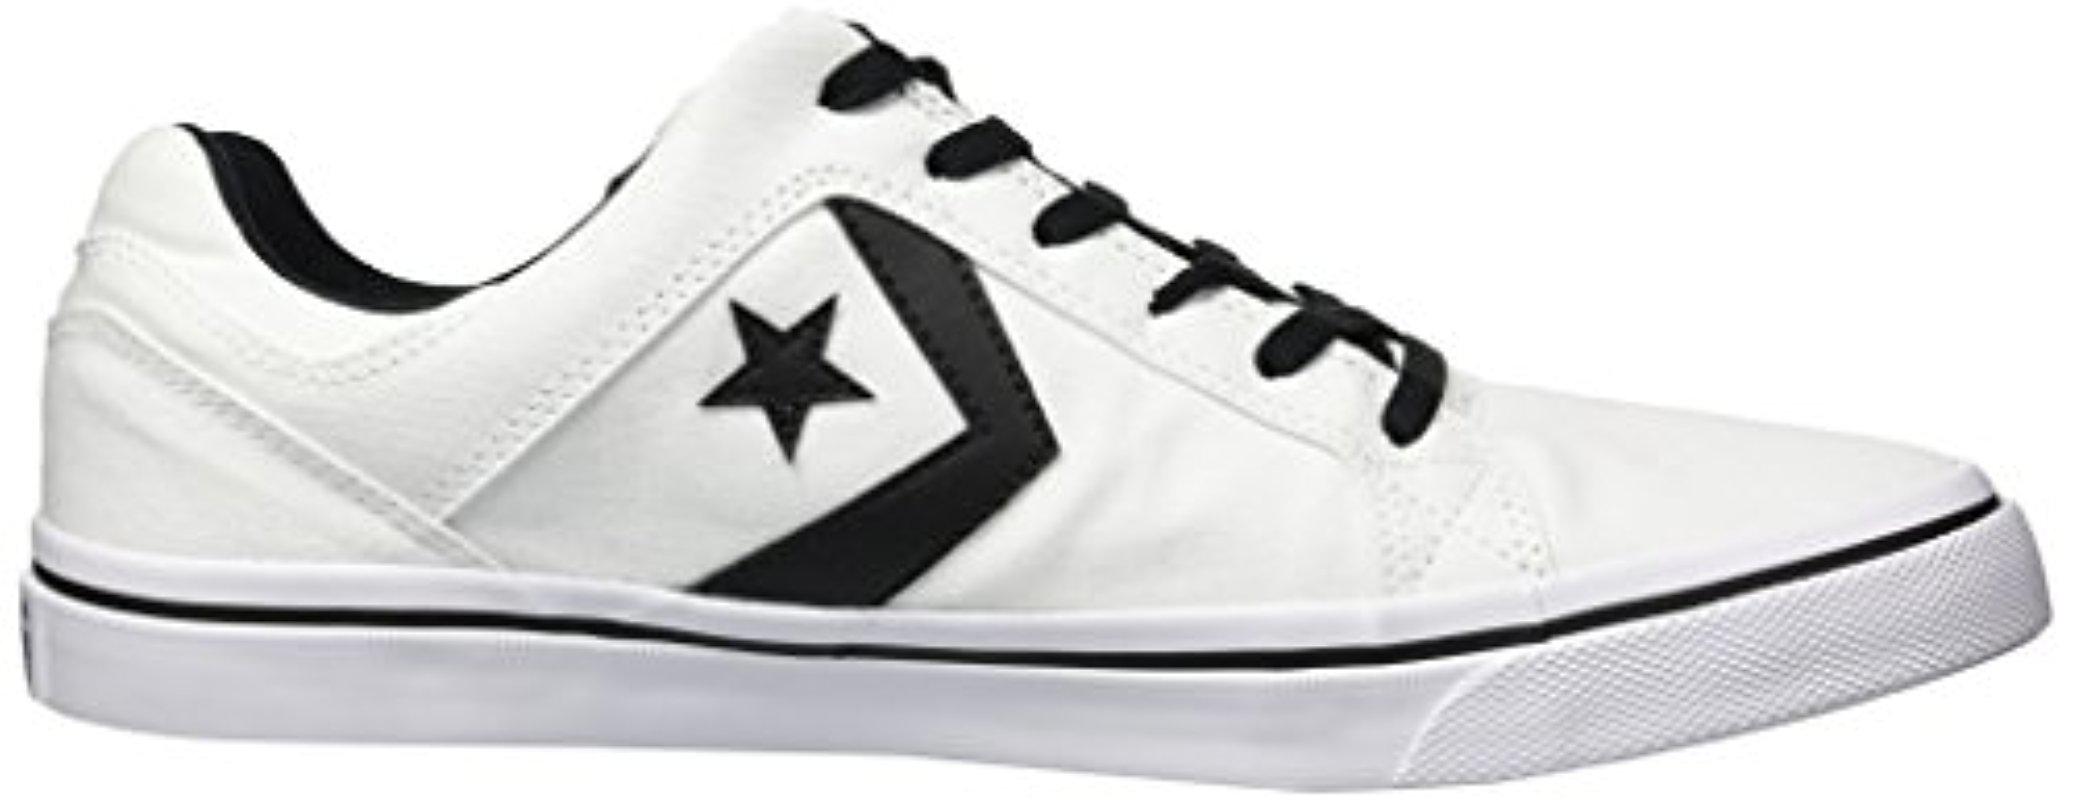 Converse El Distrito Canvas Low Top Sneaker in White/Black/White (White)  for Men | Lyst